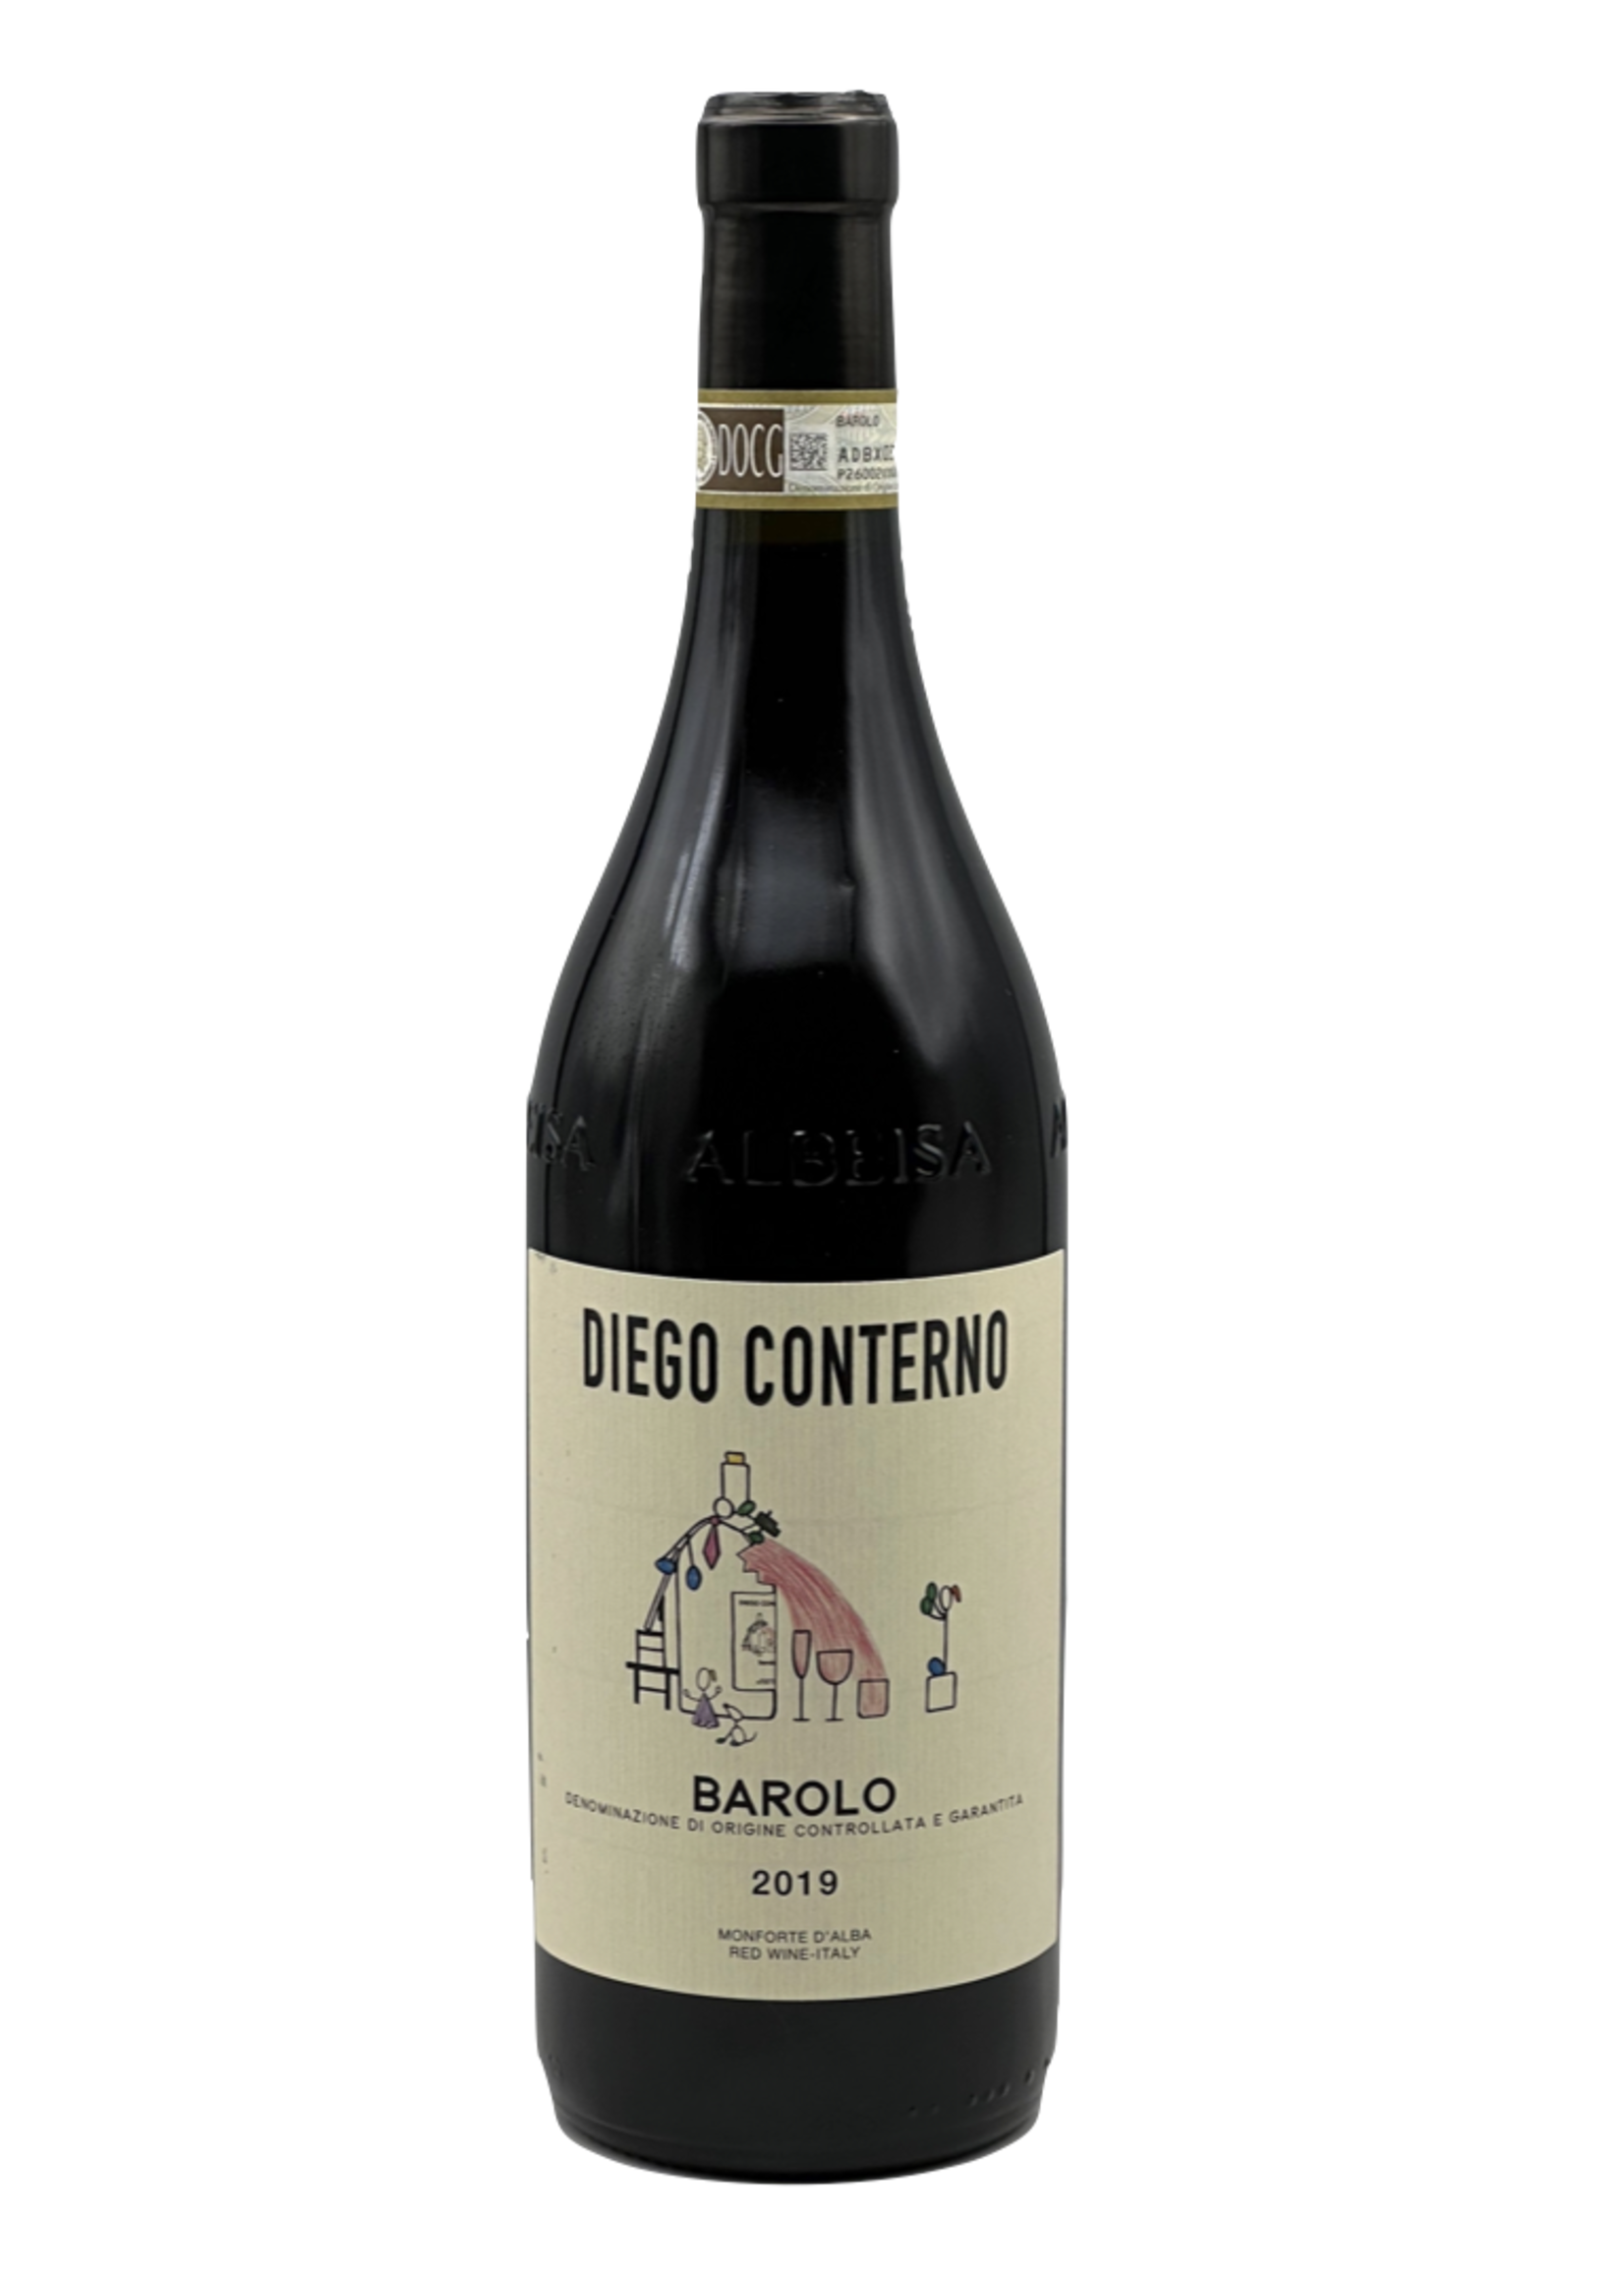 Barolo 2019 Diego Conterno